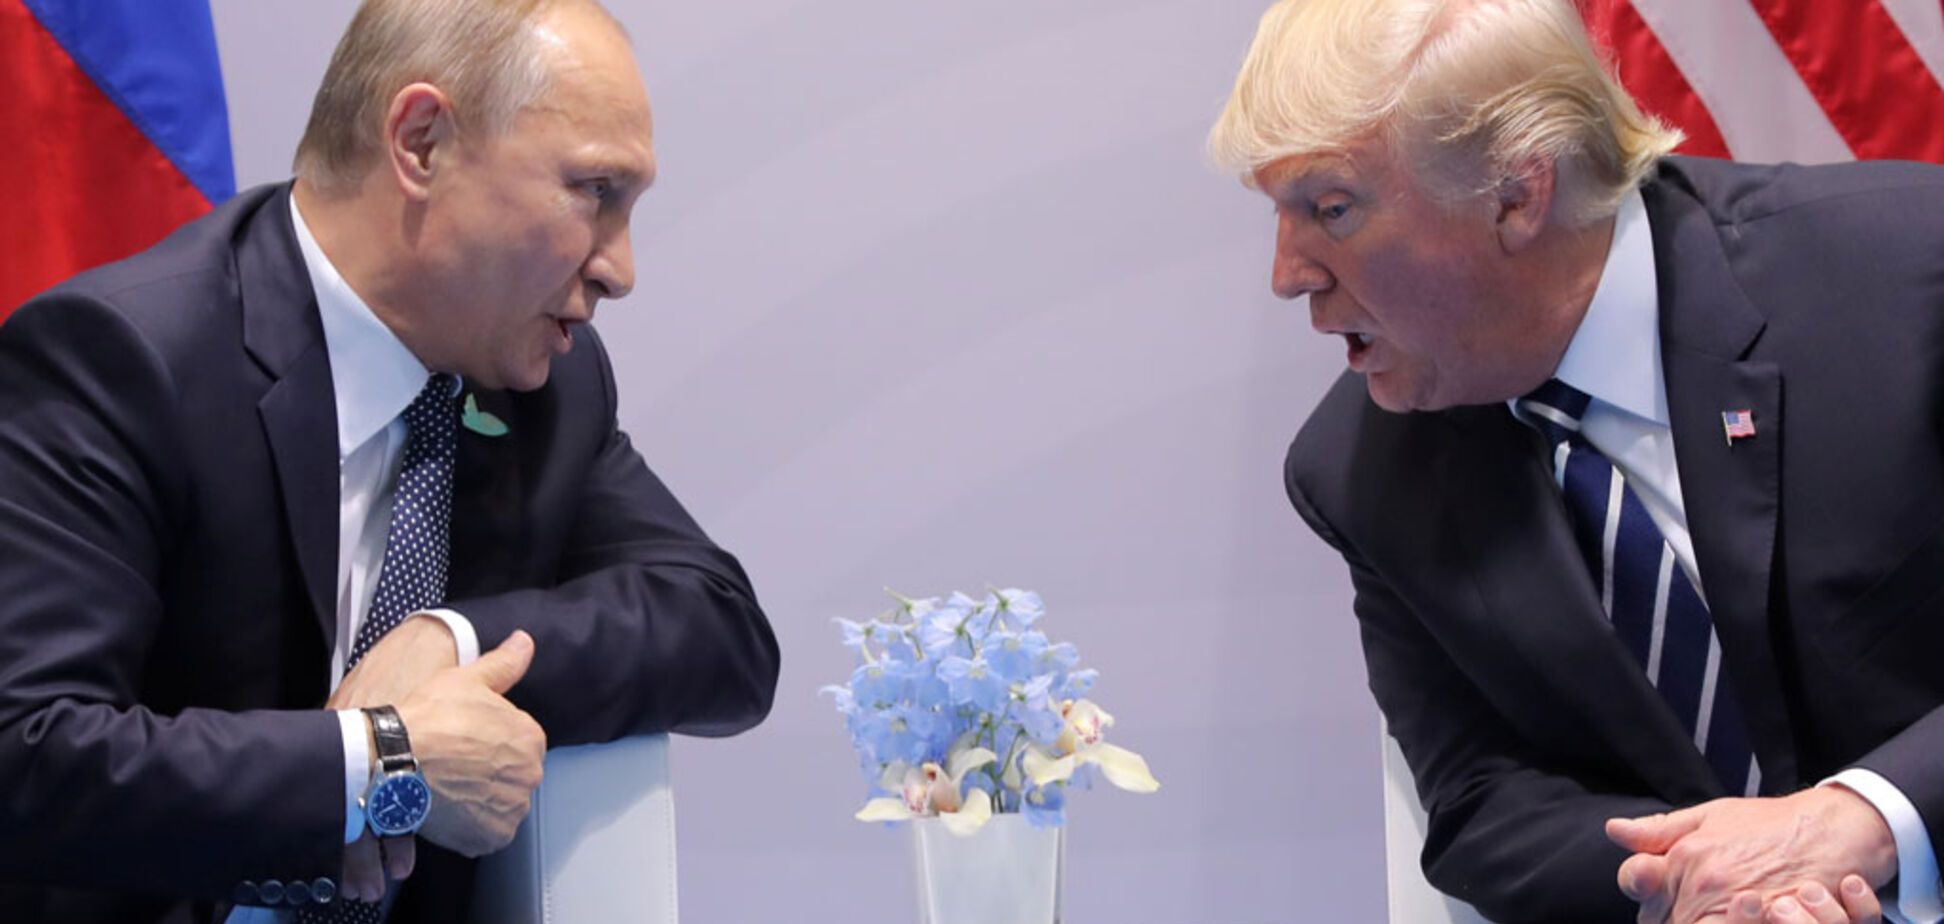 'Вони однакові!' Політик розкрив таємний зв'язок між Путіним і Трампом